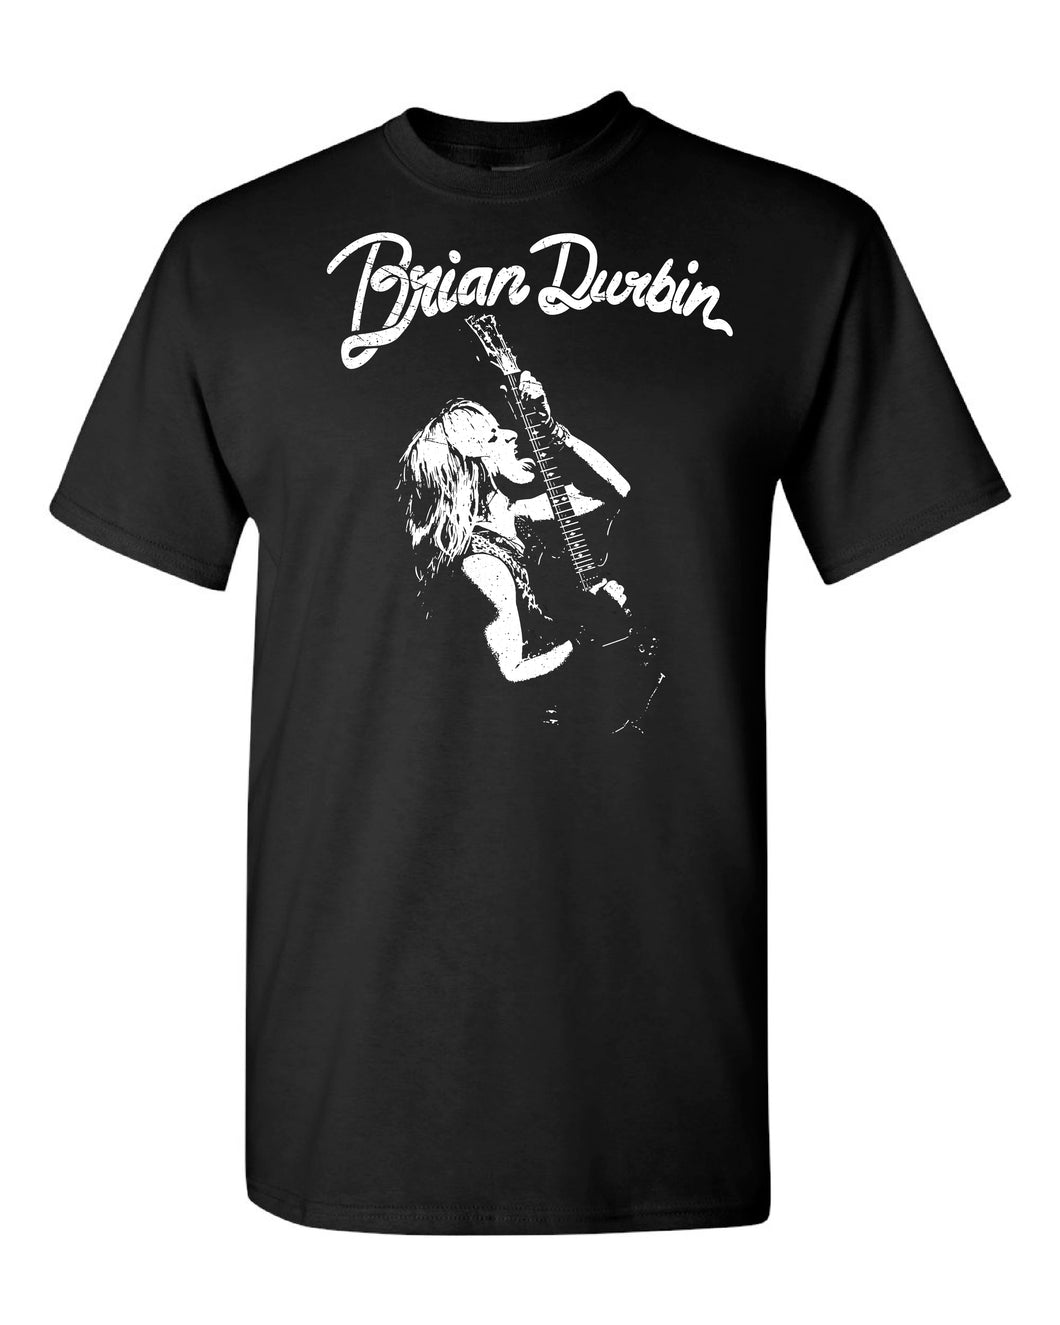 Brian Durbin T-Shirt